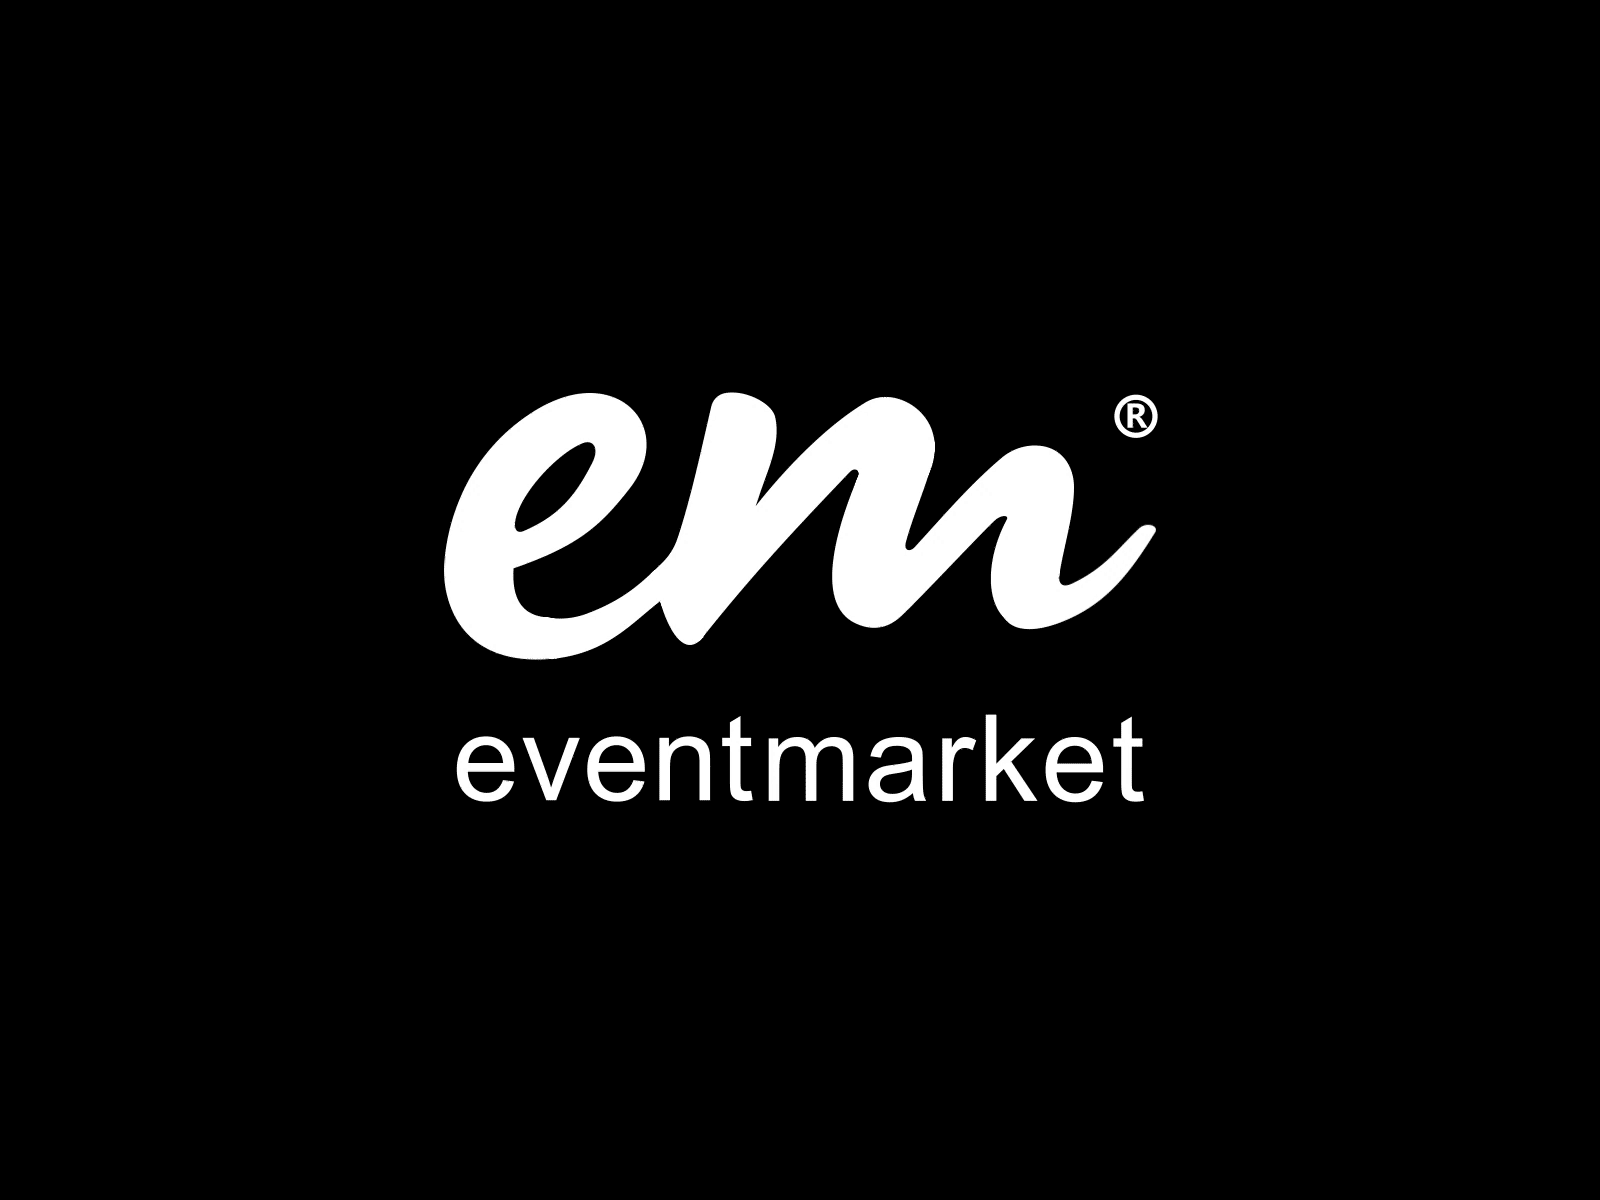 eventmarket logo animation